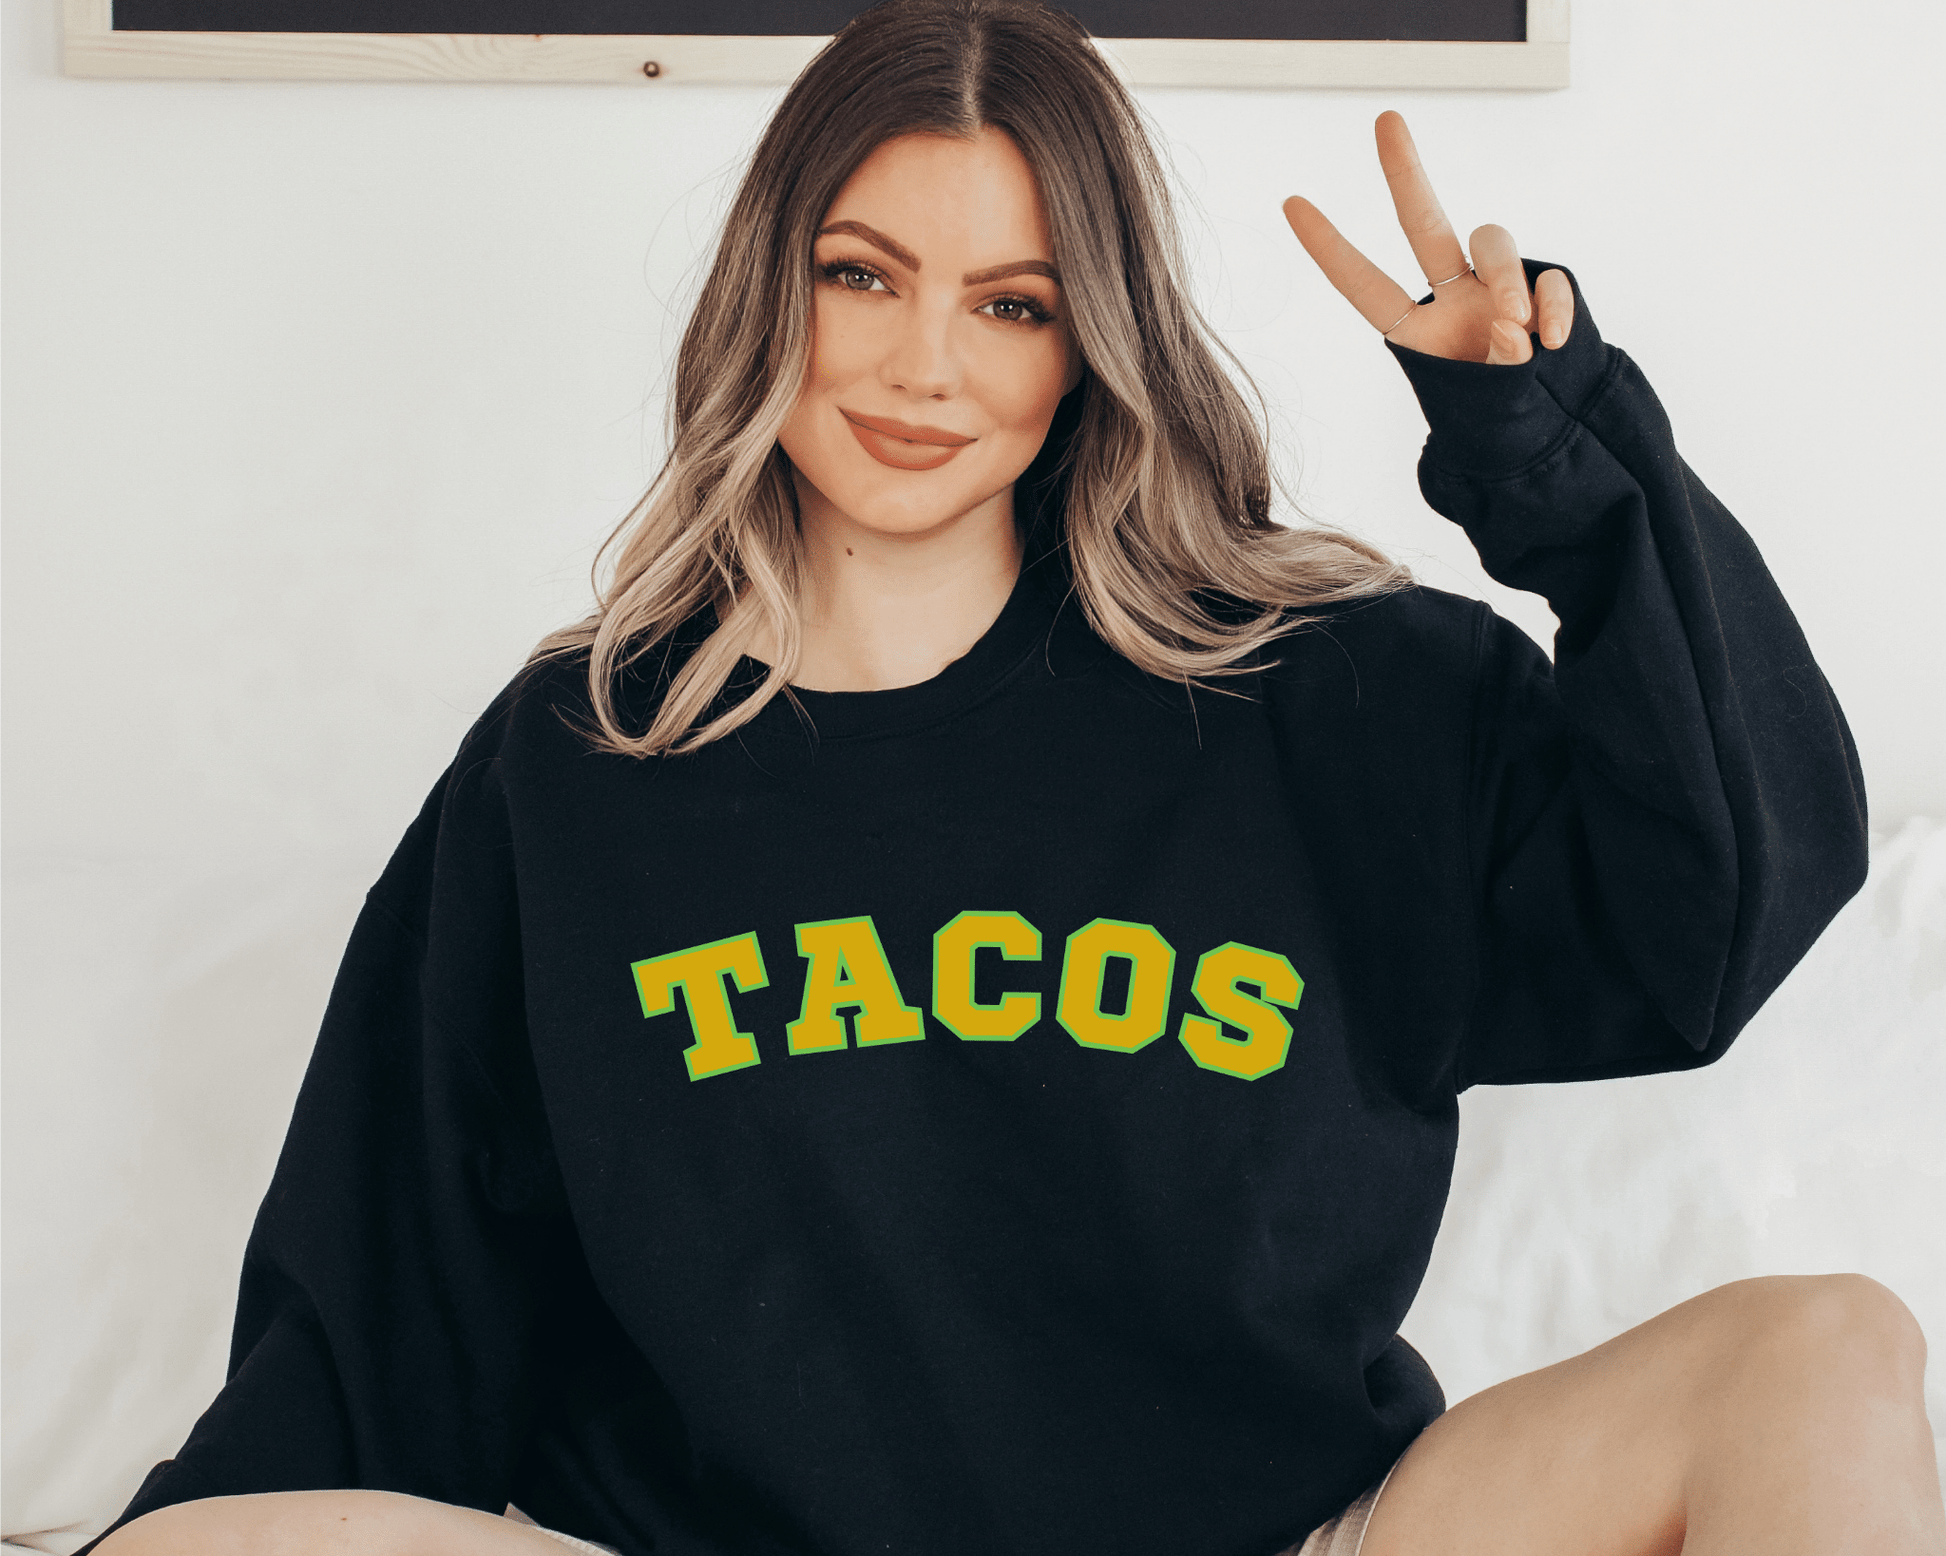 Tacos Sweatshirt in Black